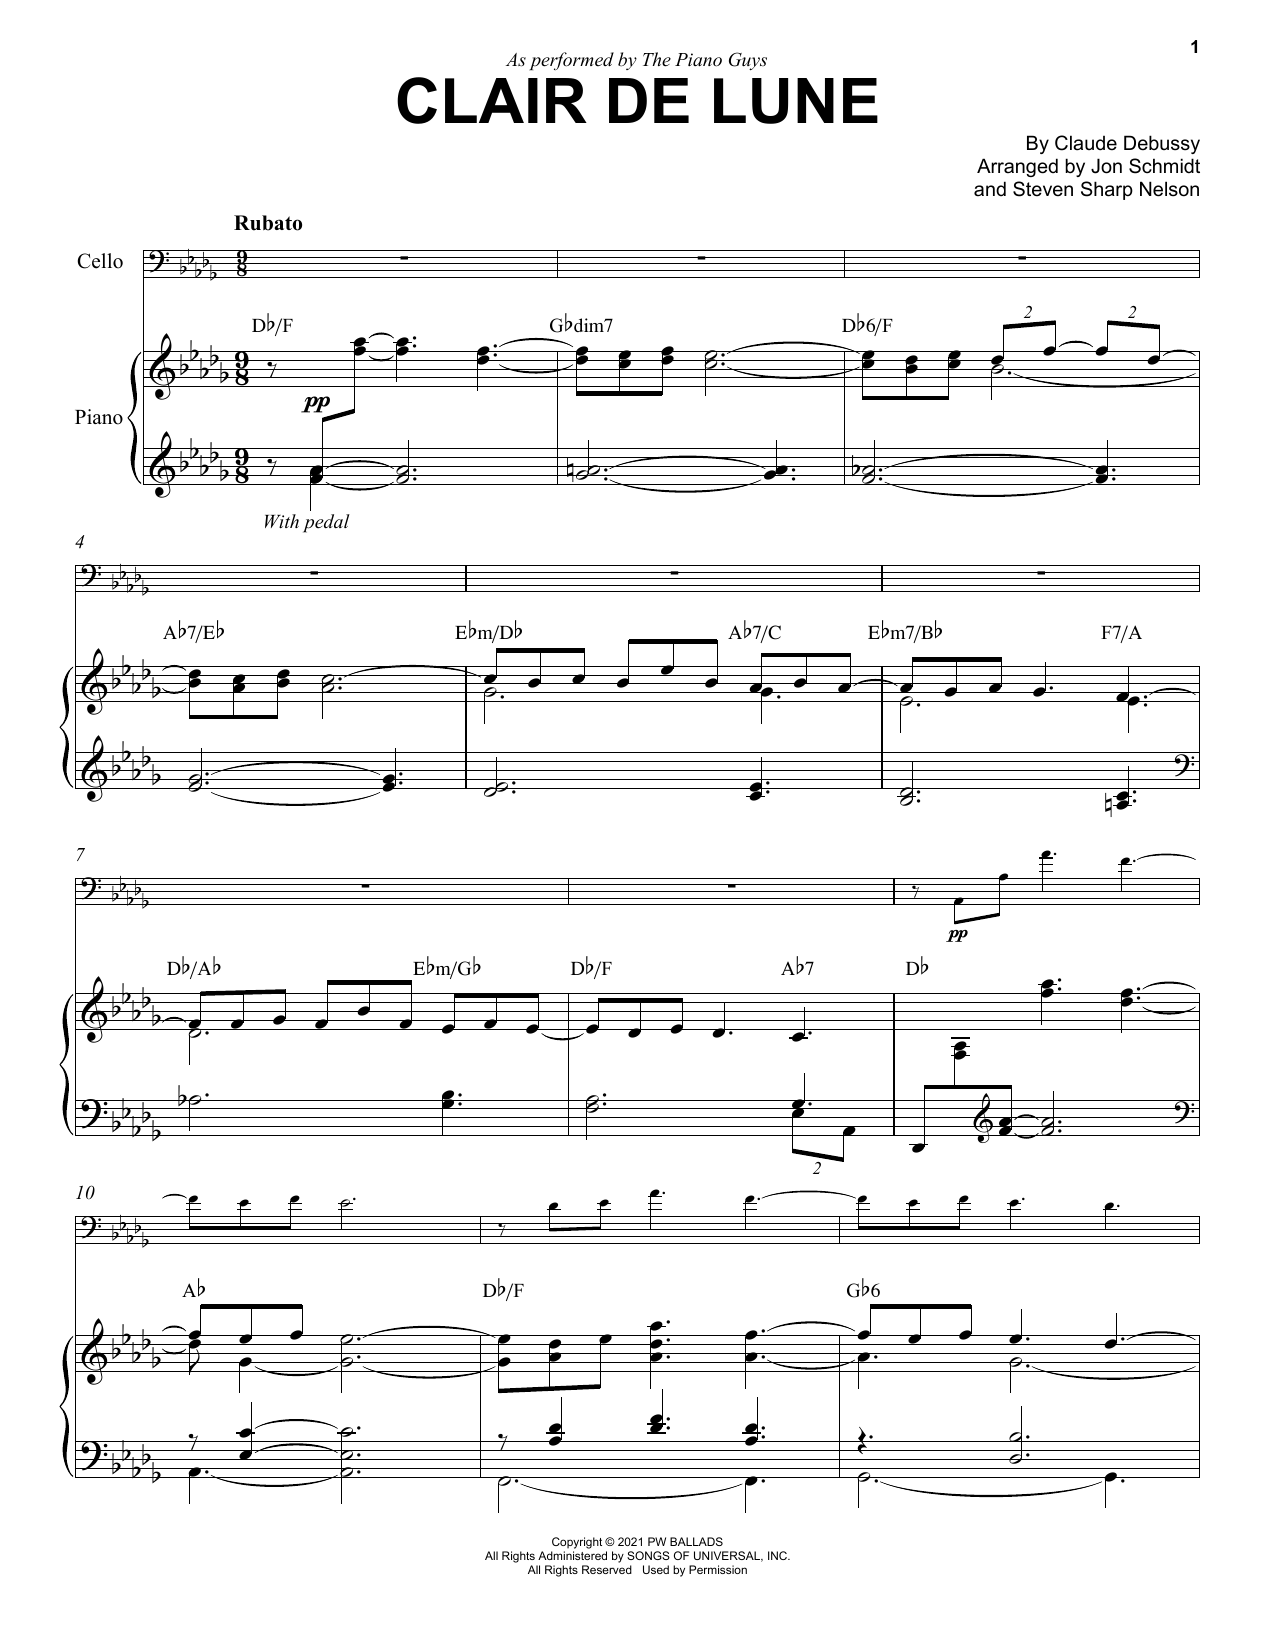 Download The Piano Guys Clair De Lune Sheet Music